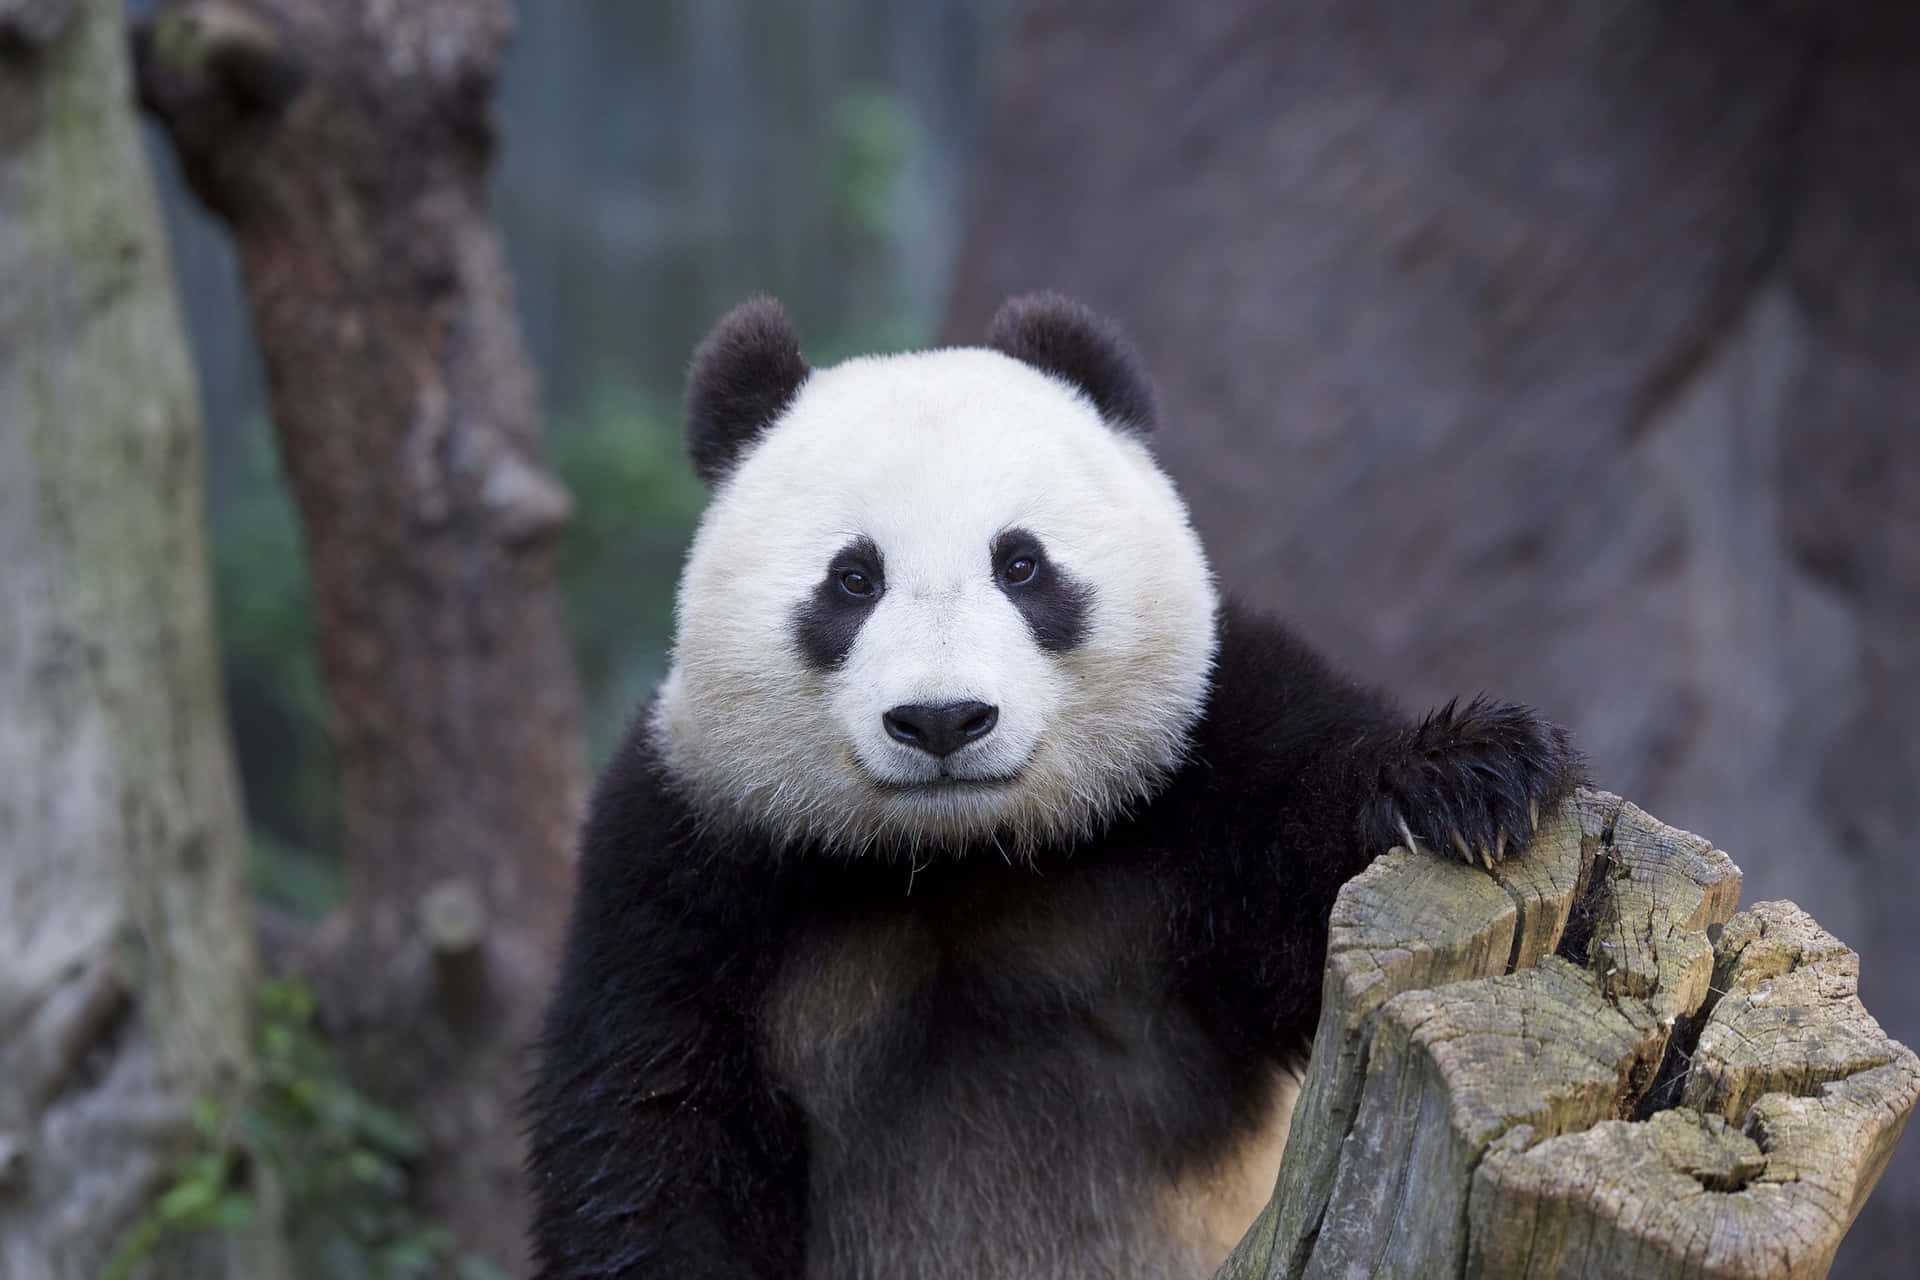 A cute panda enjoying some fresh greens.